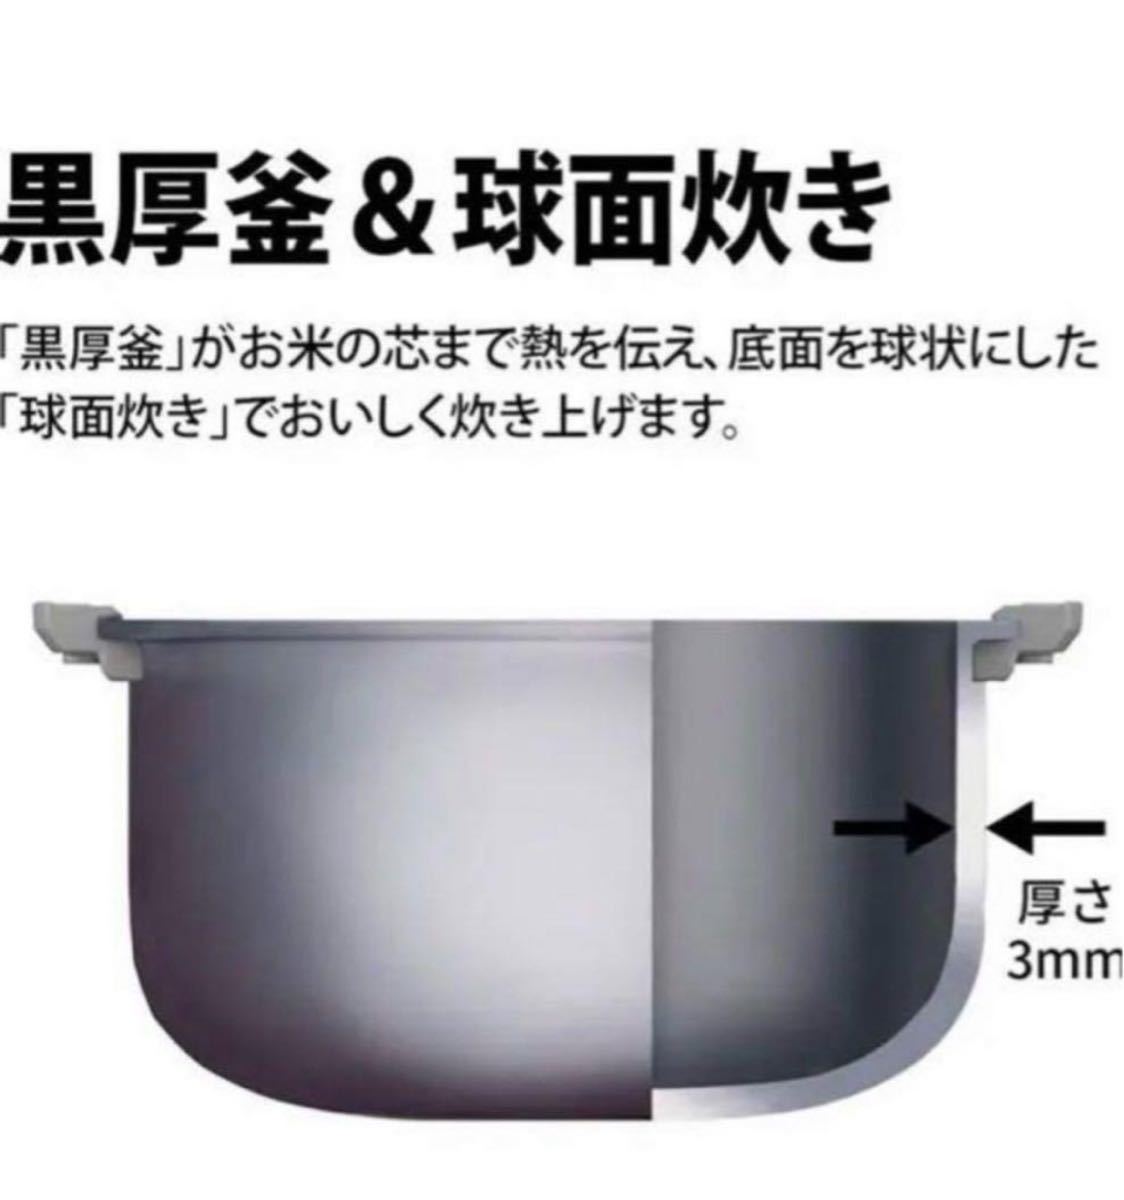 【新品未開封】シャープ 炊飯器 マイコン 3合 パン調理機能付き ブラック